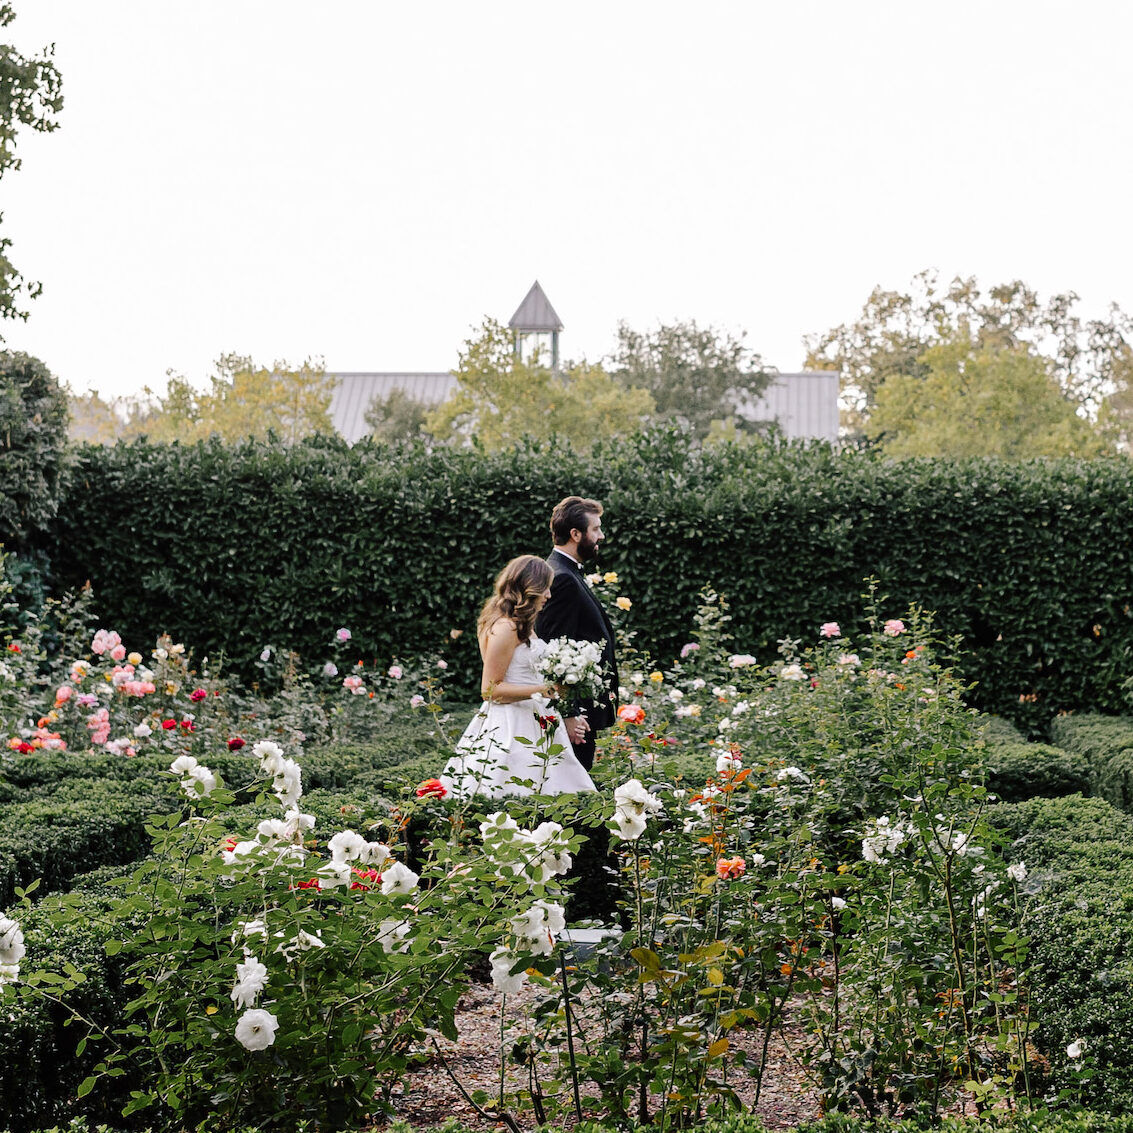 A bride and groom walking through a romantic wedding venue: the floral gardens of Beaulieu Garden in Saint Helena, California.